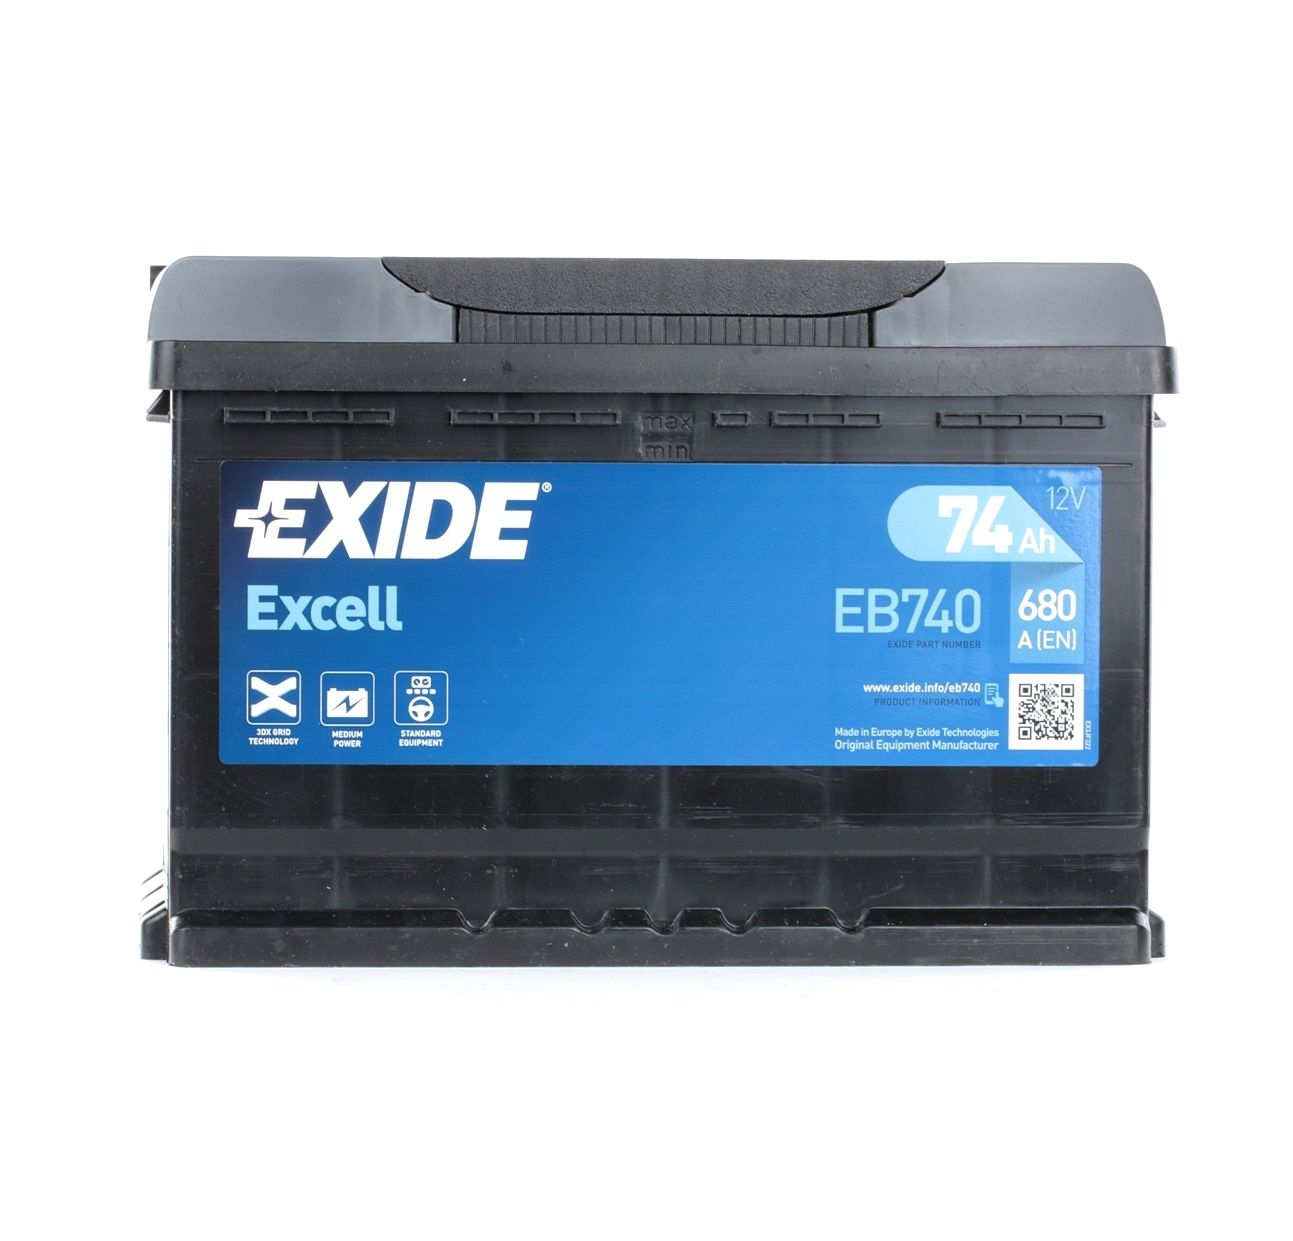 Opel Batterie Autoteile - Batterie EXIDE EB740